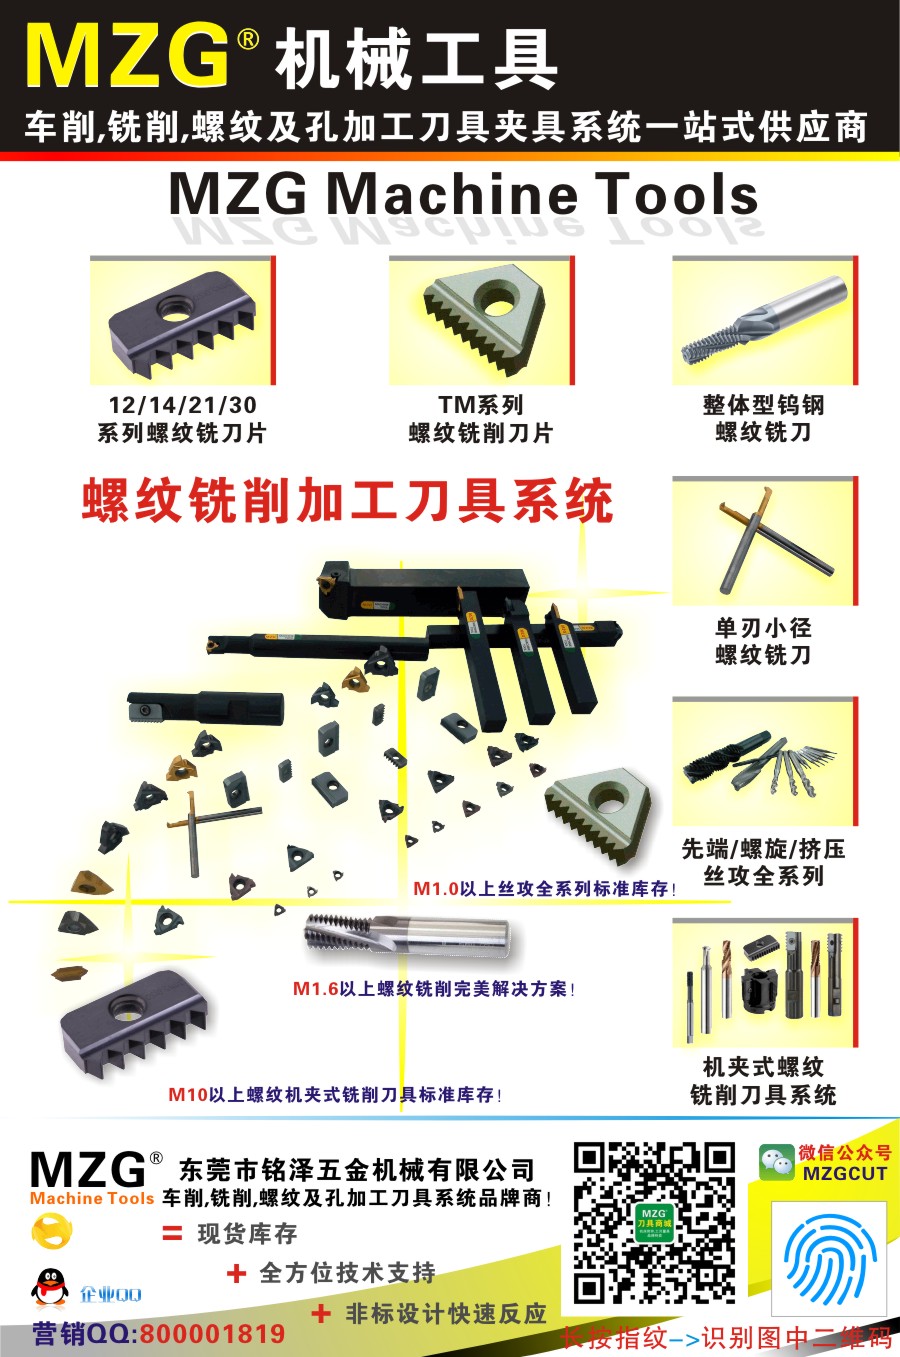 900-10螺纹铣削加工刀具系统图片价格